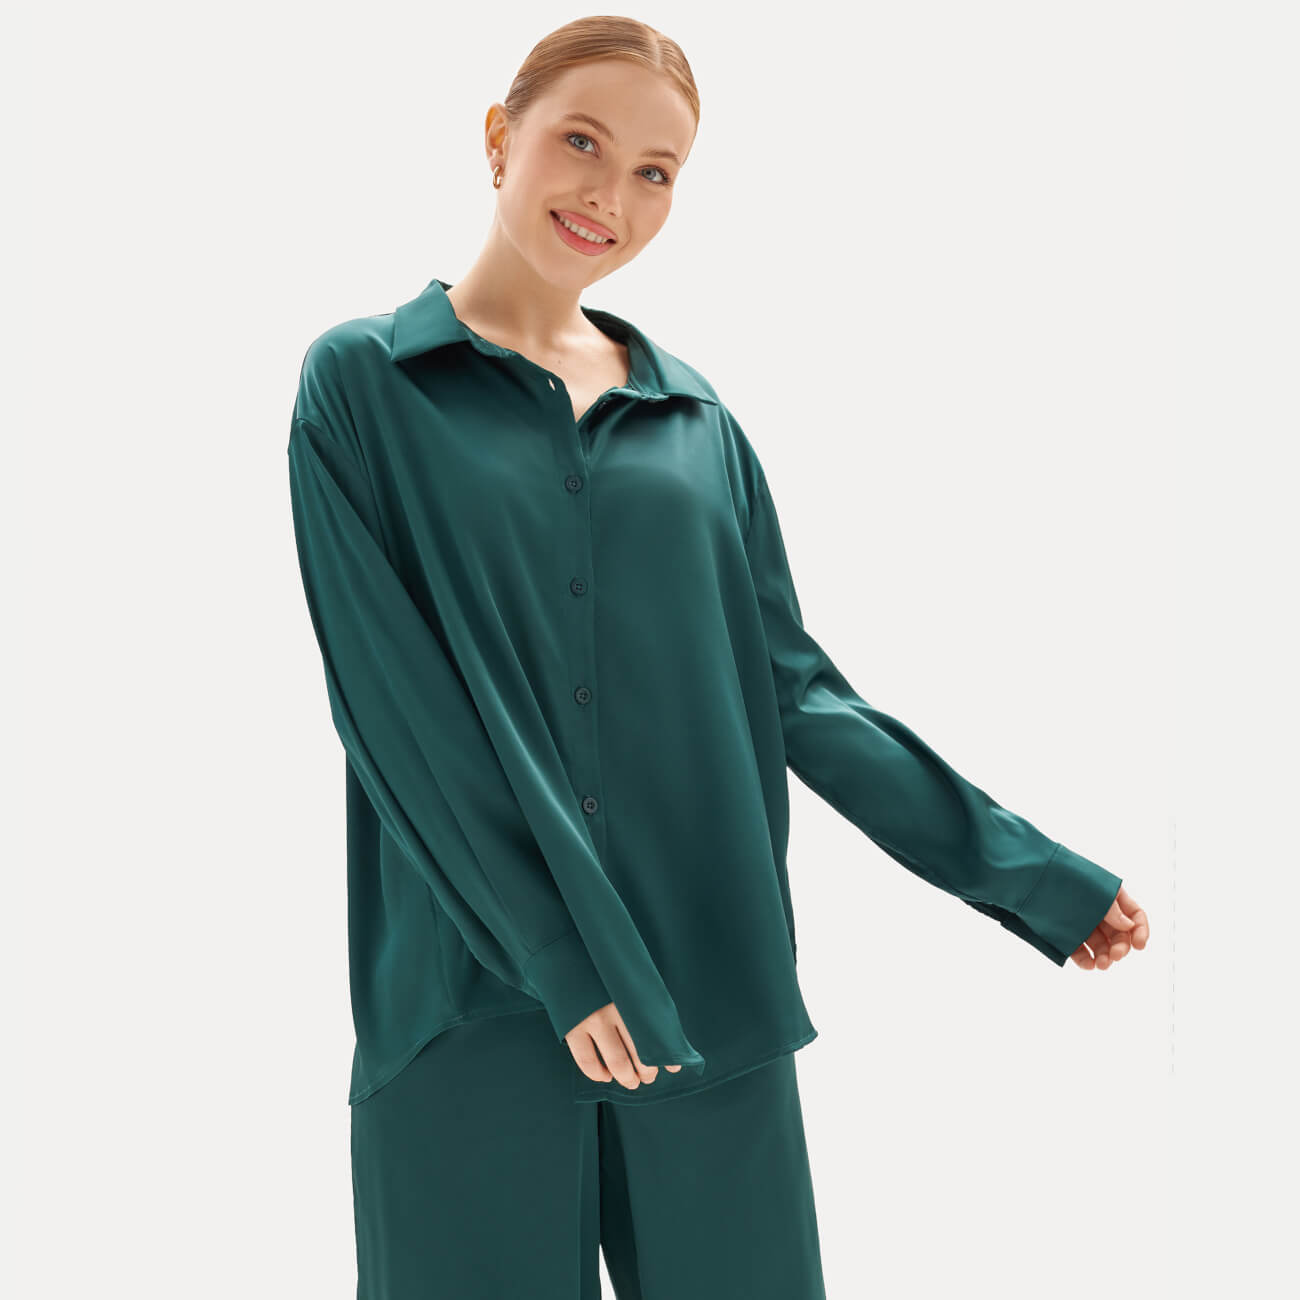 Рубашка женская, домашняя, р. L, с длинным рукавом, полиэстер/эластан, темно-зеленая, Candice